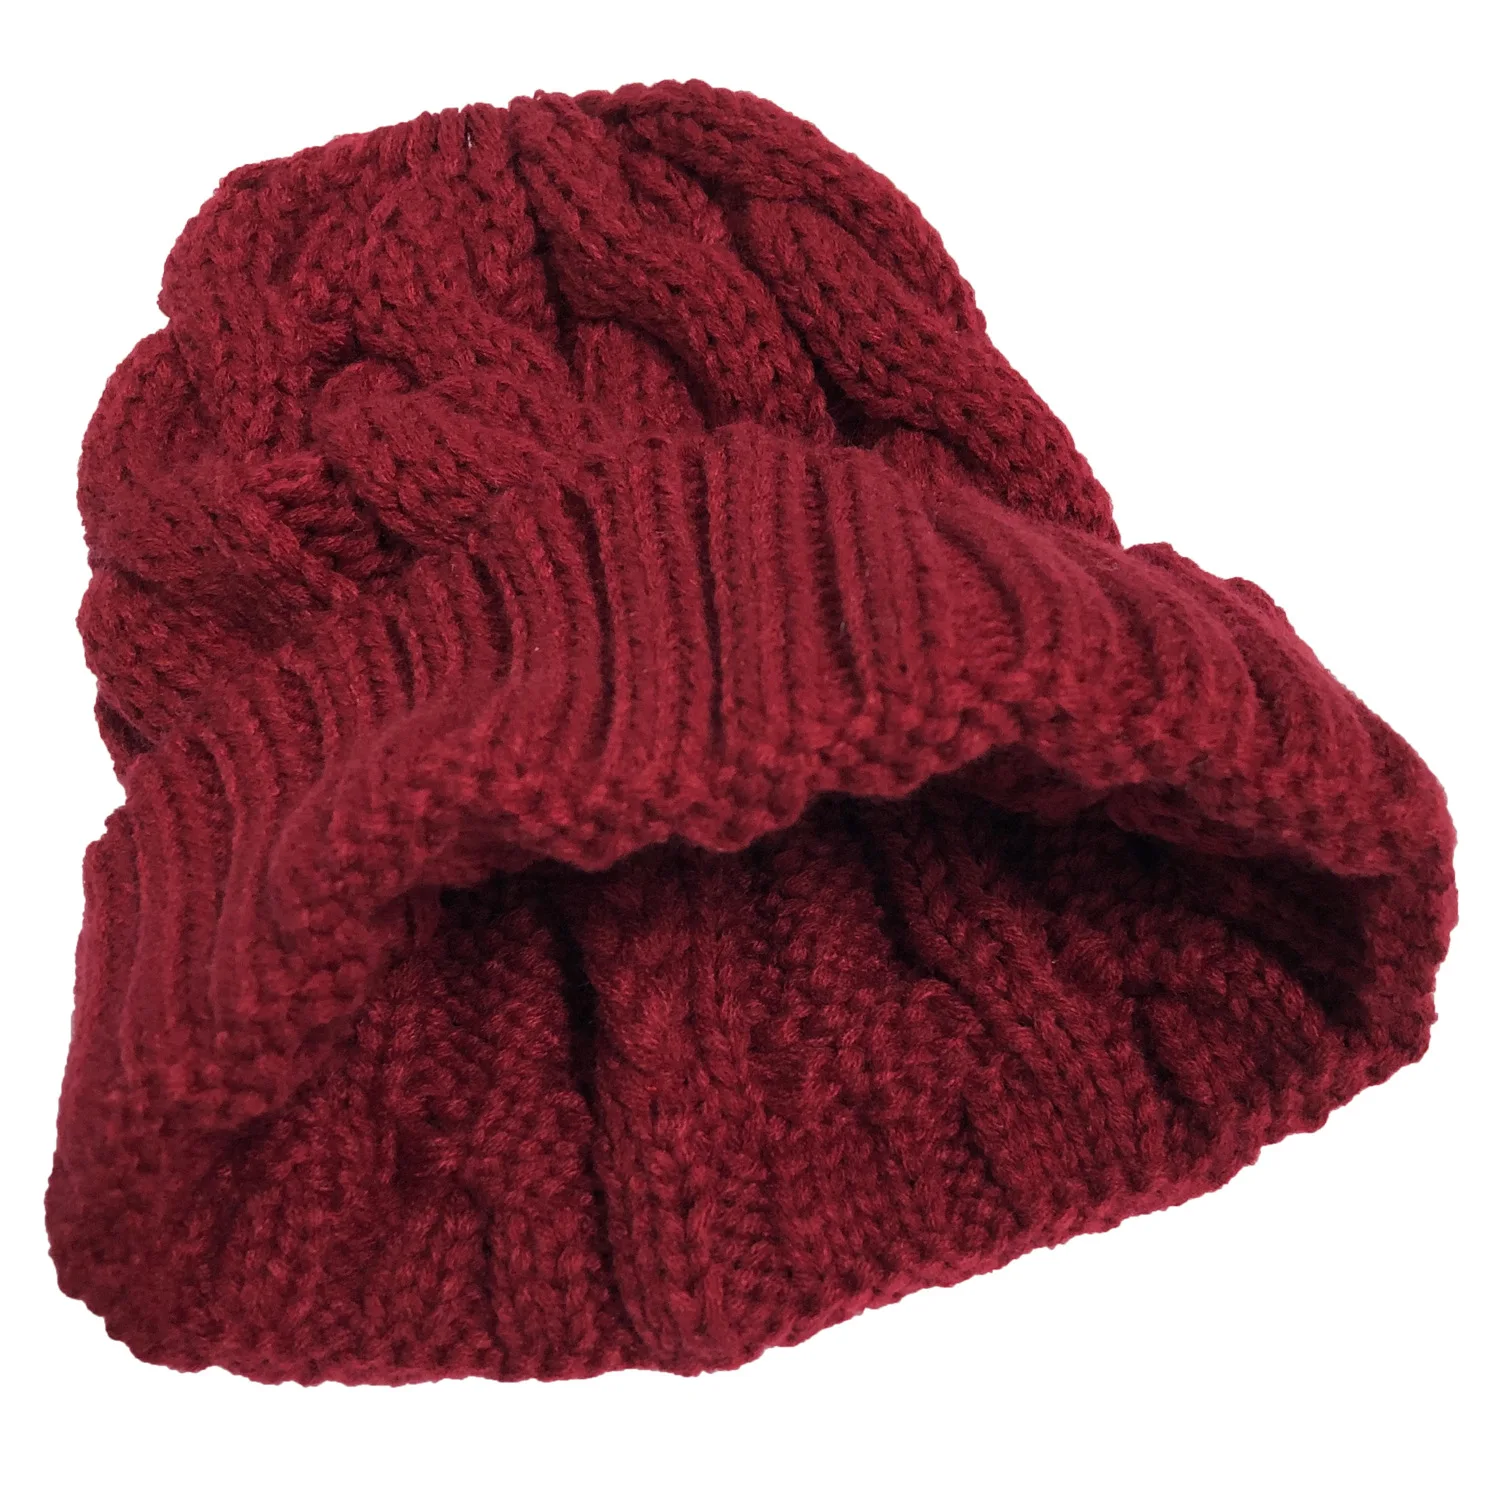 Новая мода горячая Распродажа Женская шапка осень зима толстый теплый твист керлинг вязанный конский хвост шерстяной свитер шапка для девочки